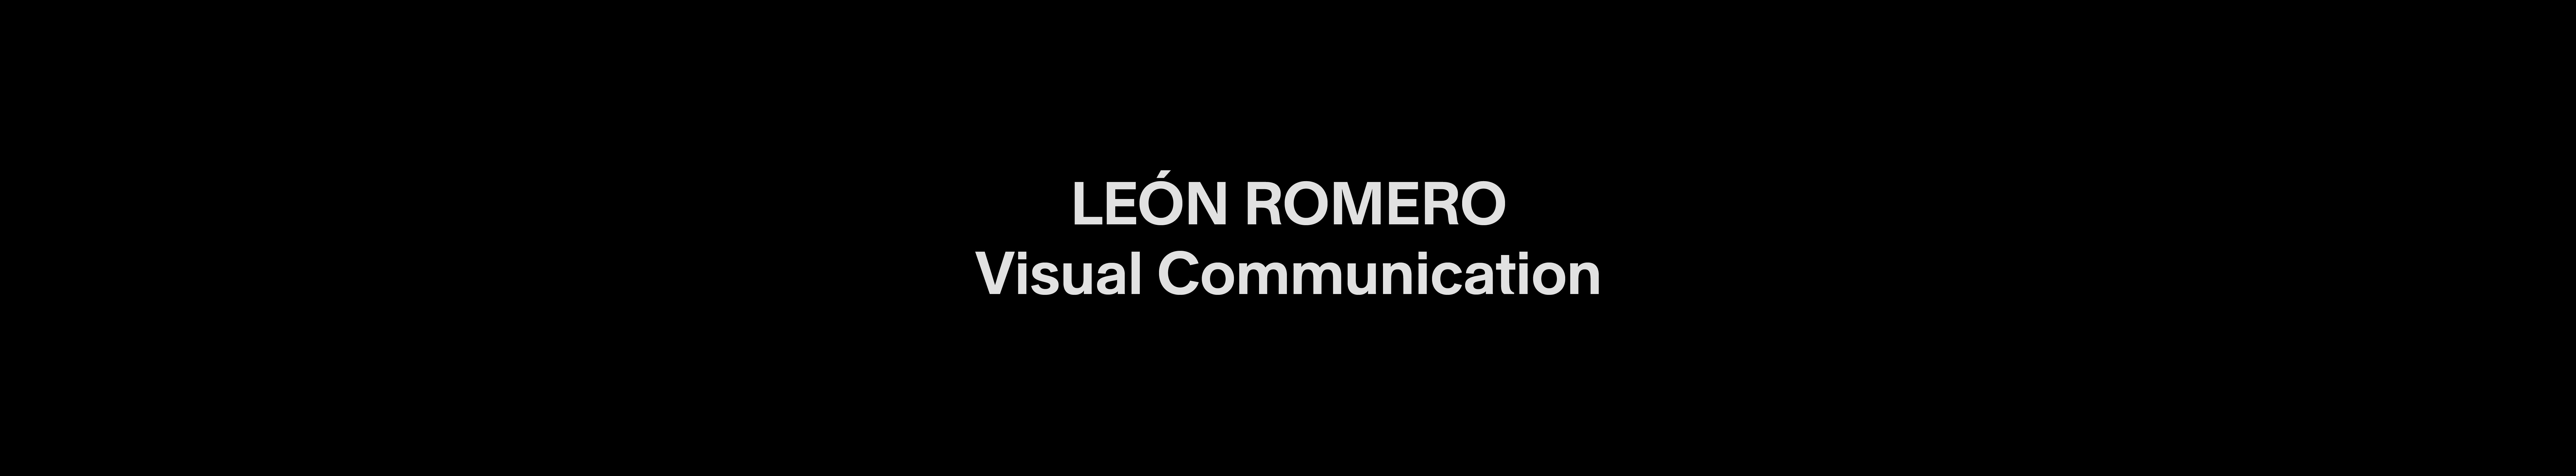 LEÓN ROMERO profil başlığı